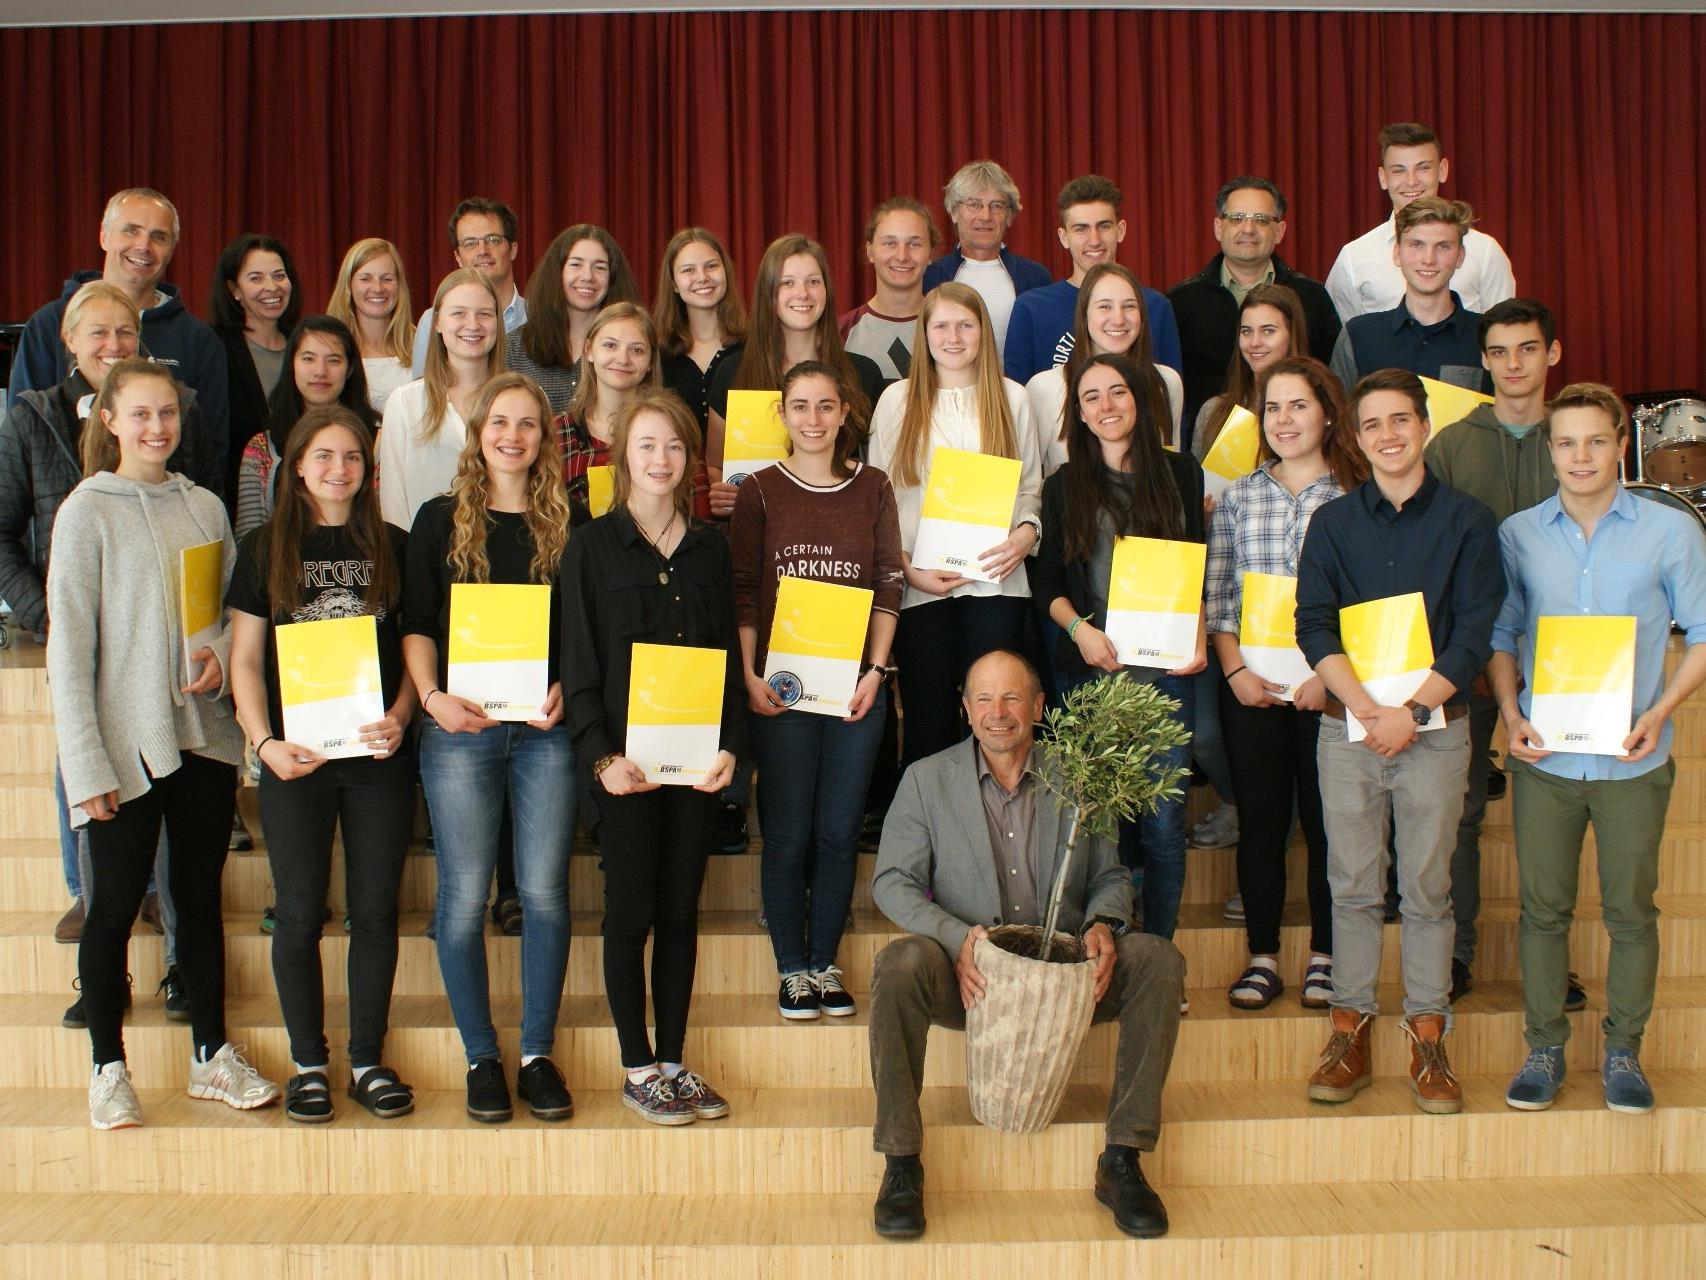 25 neue FIT-InstruktorInnen der 7. Klasse Gesundheit & Bewegung des Bludenzer Gymnasiums durften ihre staatlich anerkannten Diplome entgegennehmen.